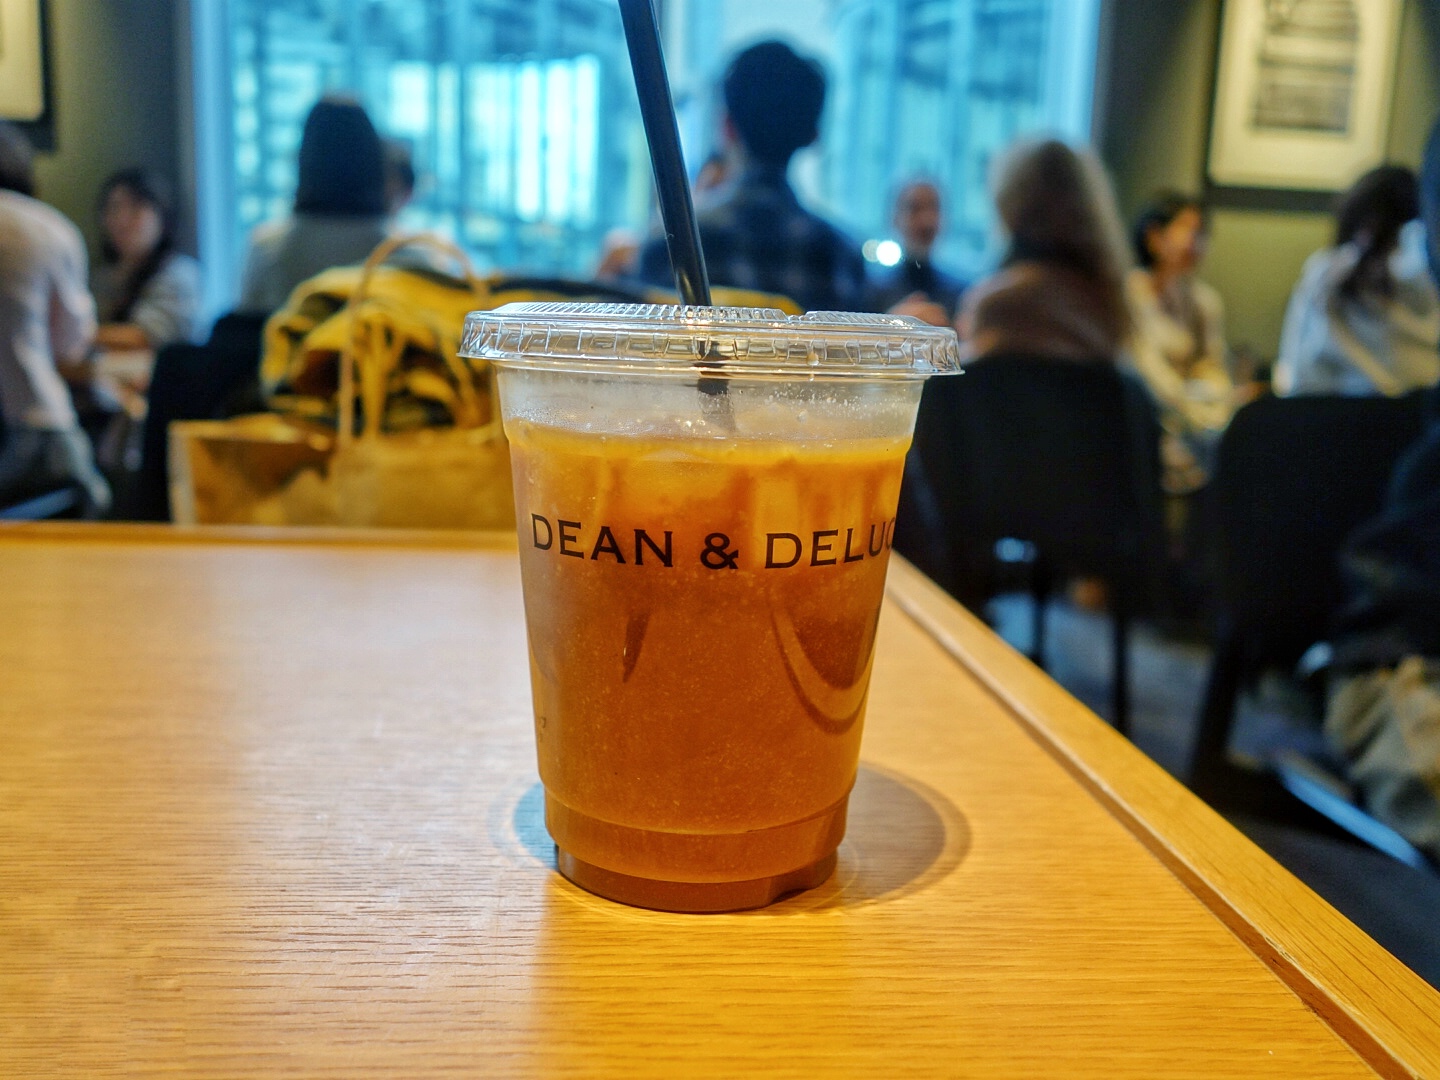 糖質制限中 アーモンドミルク ラテを飲めるお店 Dean Deluca 一級建築士 喜多島みなみのブログ 他撮り風自撮りひとり旅